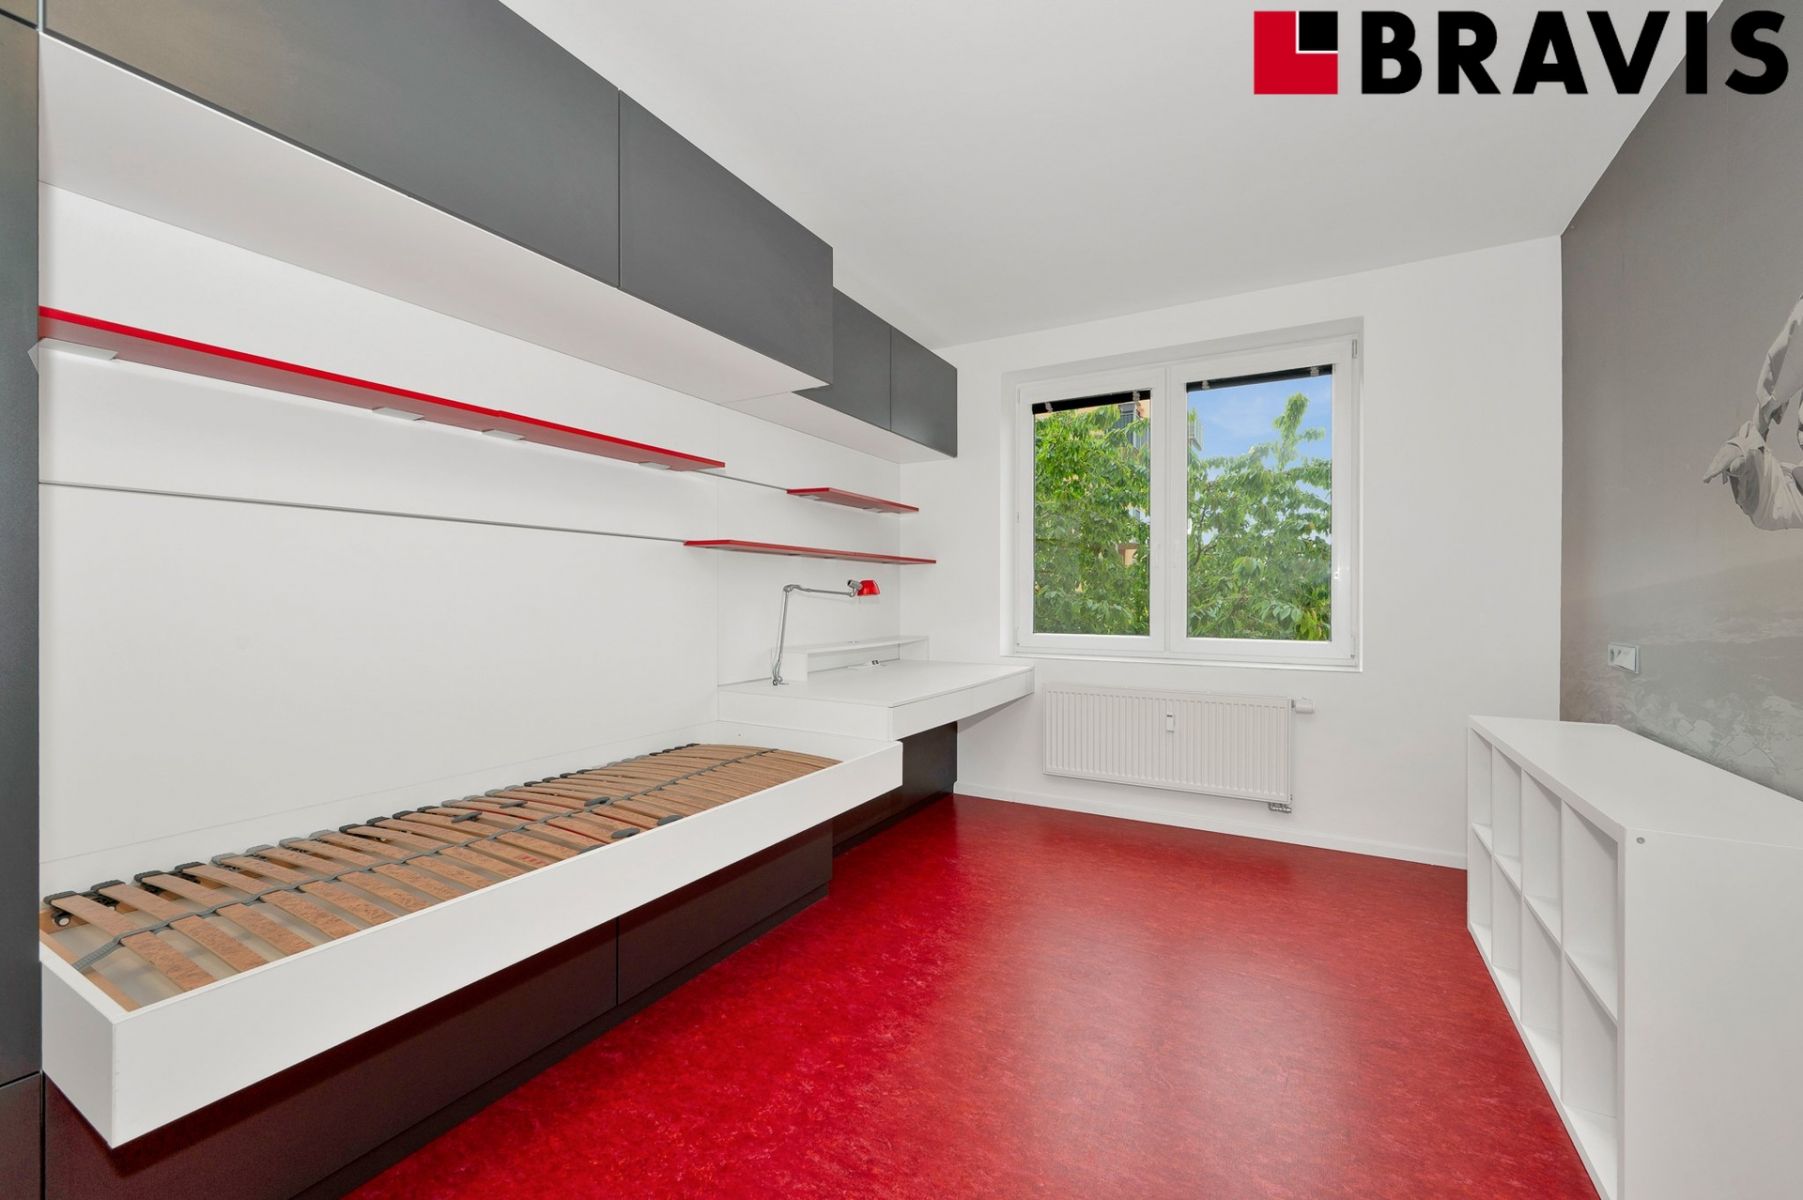 Prodej cihlového bytu 4+kk, 129 m2, 2 koupelny, lodžie a balkon - Brno - Modřice, ul. Severní, obrázek č. 3